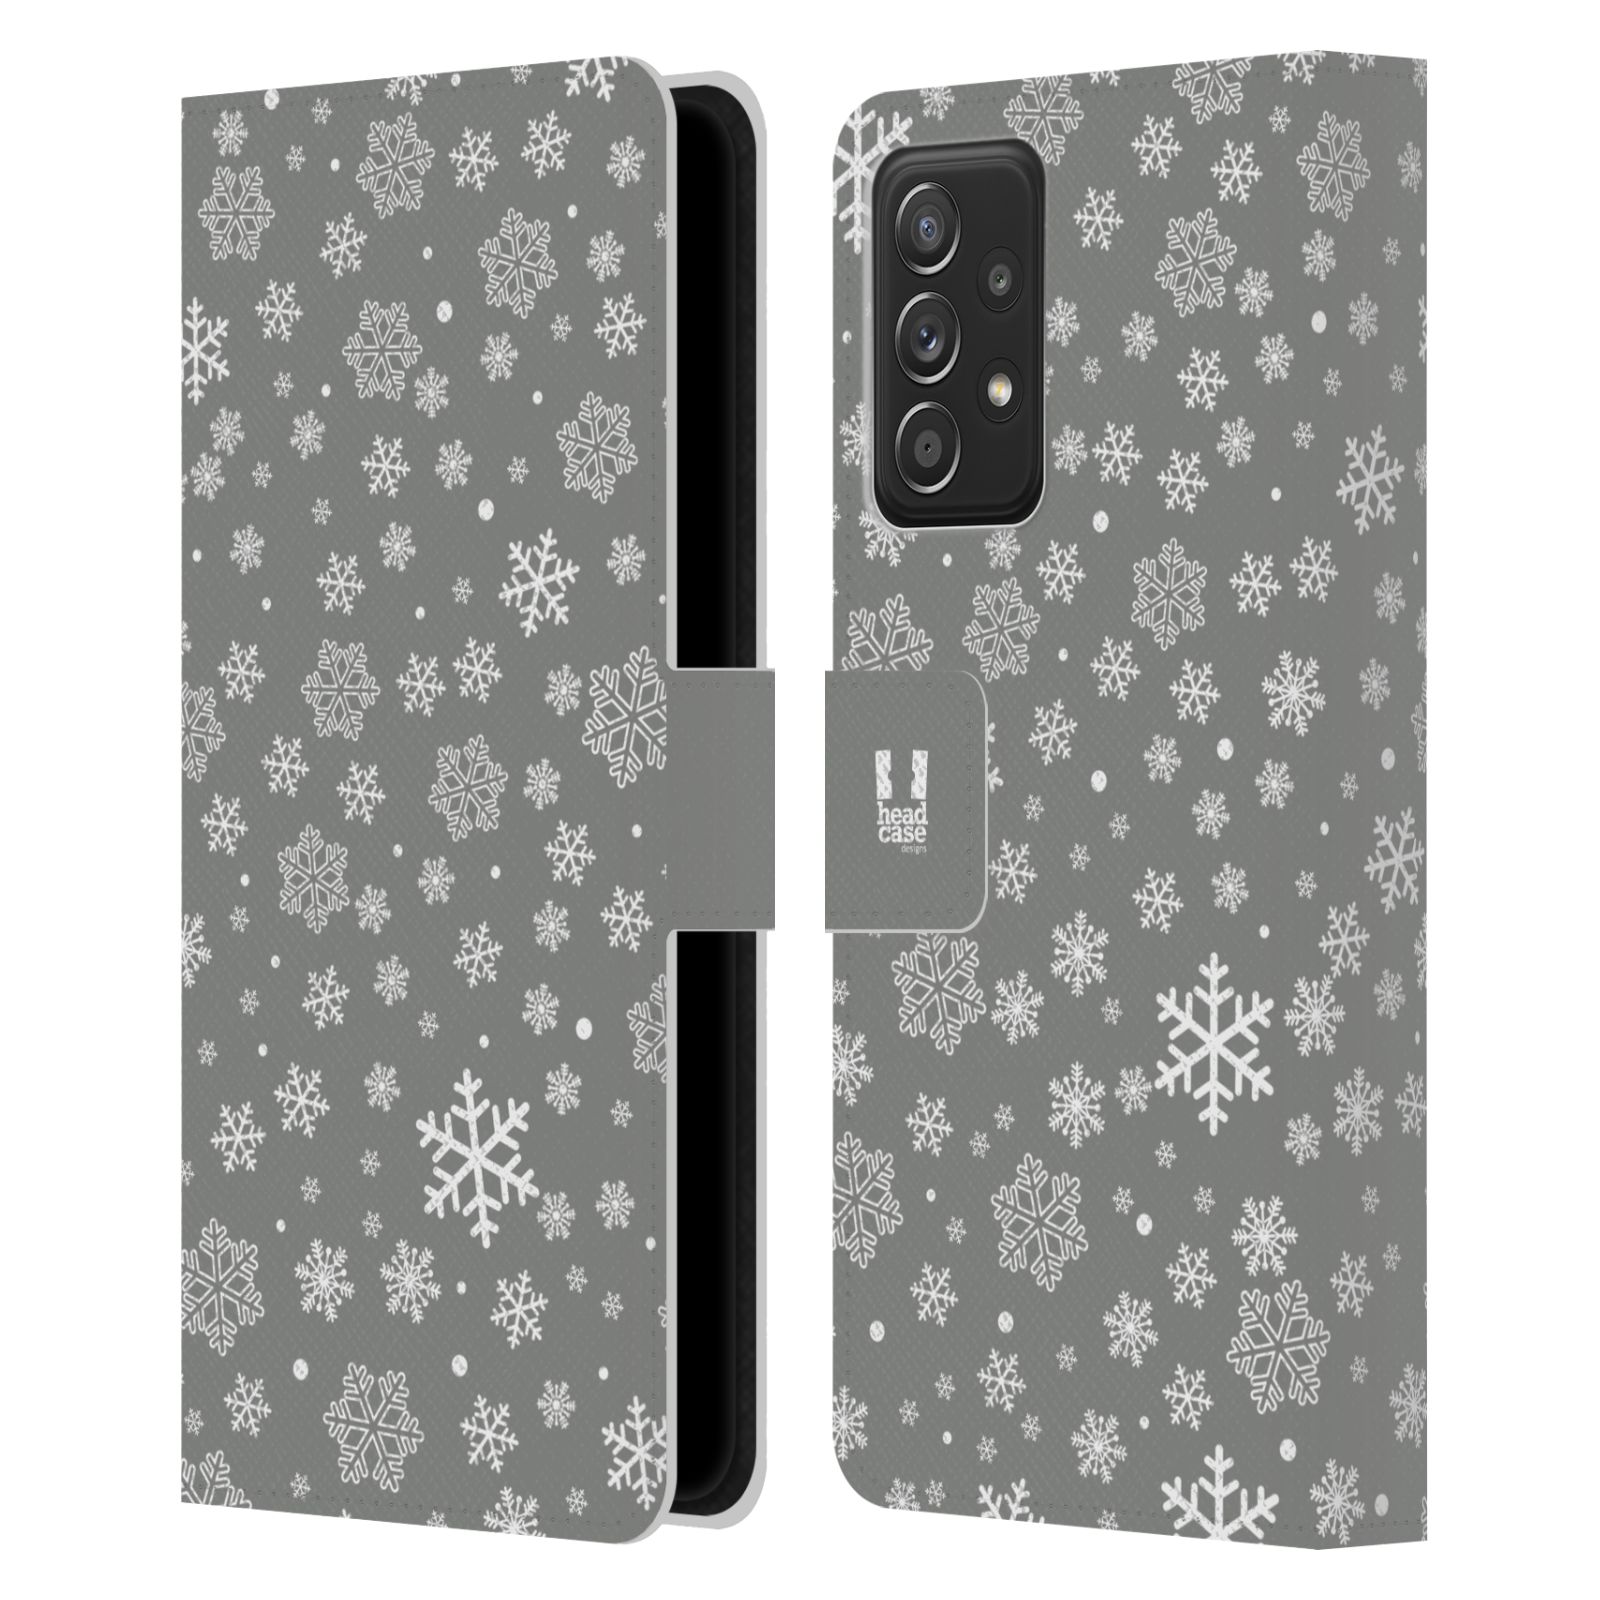 Pouzdro HEAD CASE na mobil Samsung Galaxy A52 / A52 5G / A52s 5G stříbrné vzory sněžná vločka